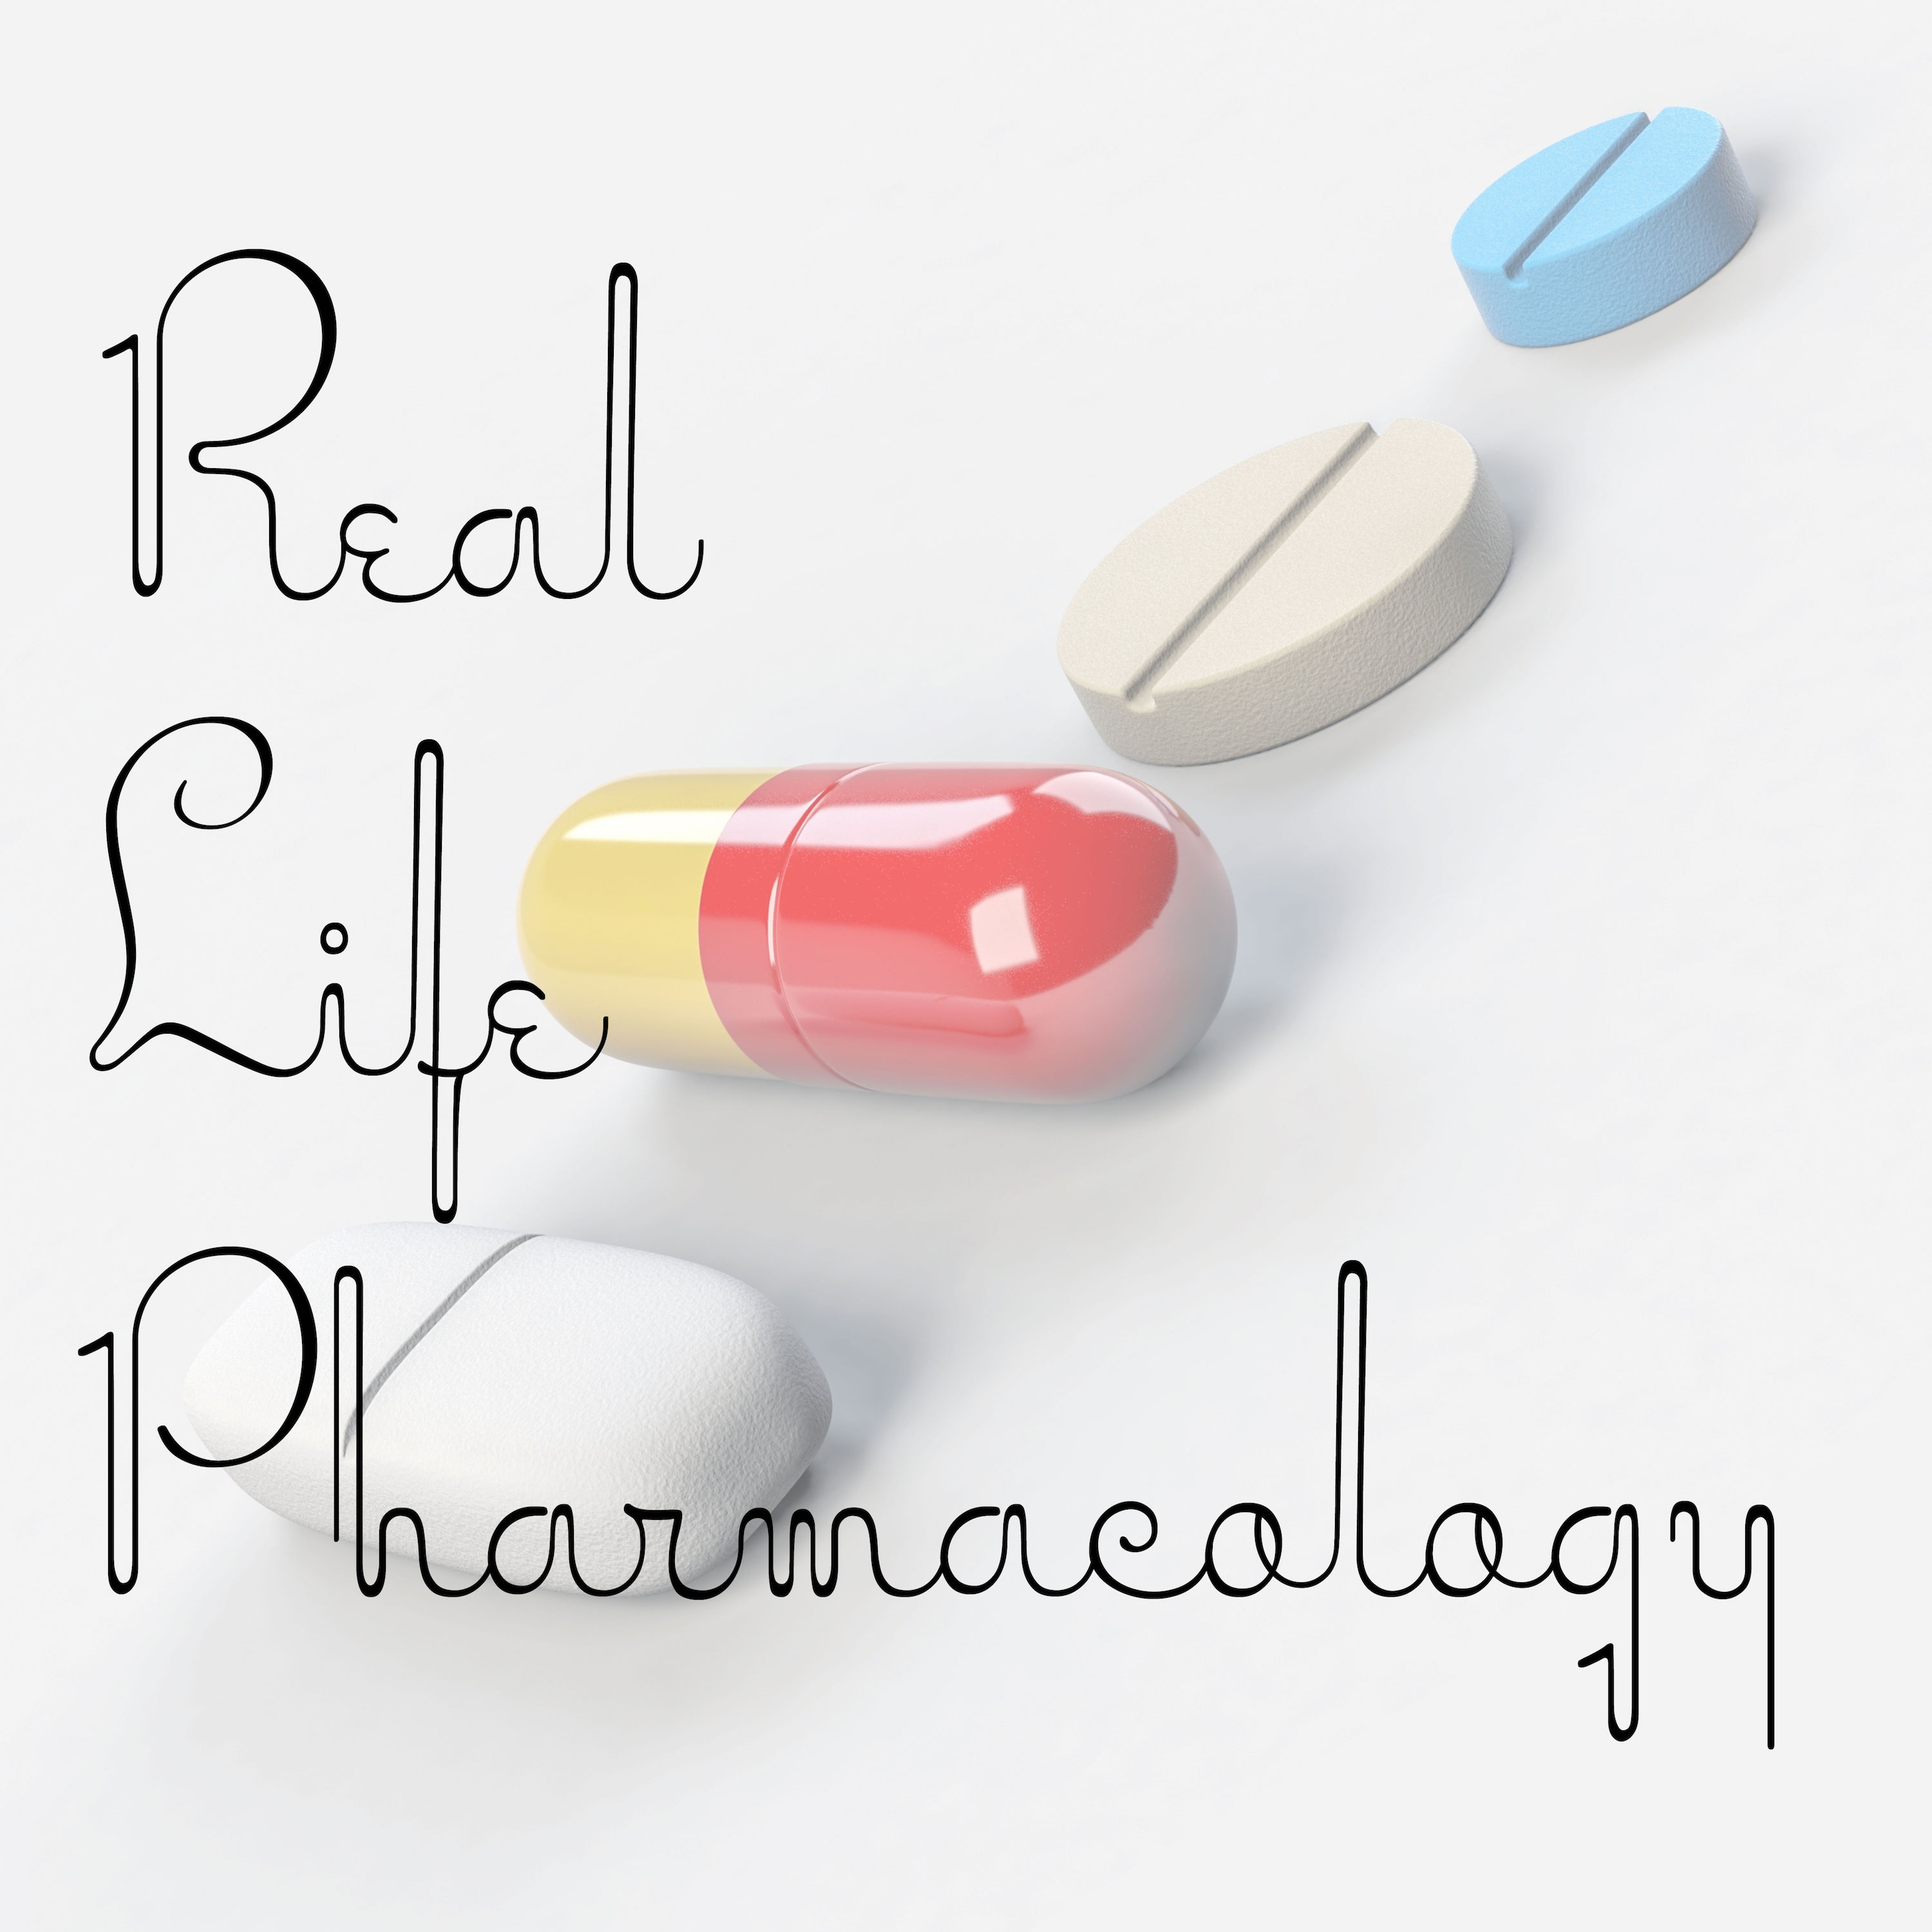 A highlight from Azathioprine Pharmacology